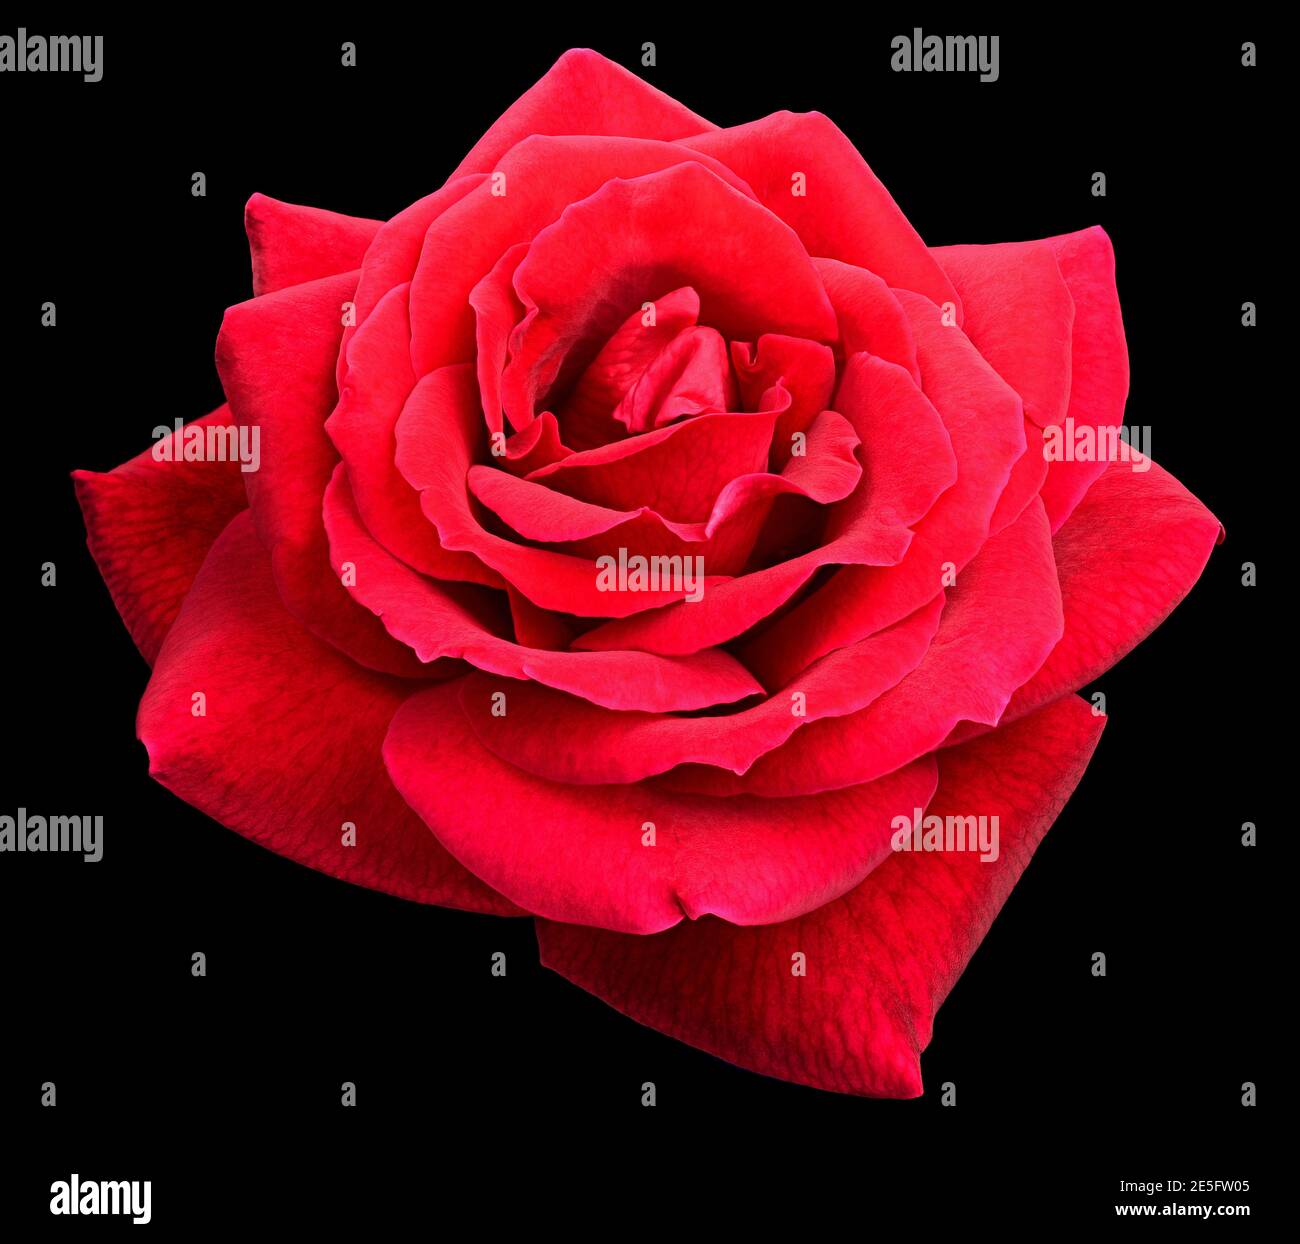 Fuoco profondo della rosa rossa isolata su sfondo nero per giorno di valantina Foto Stock